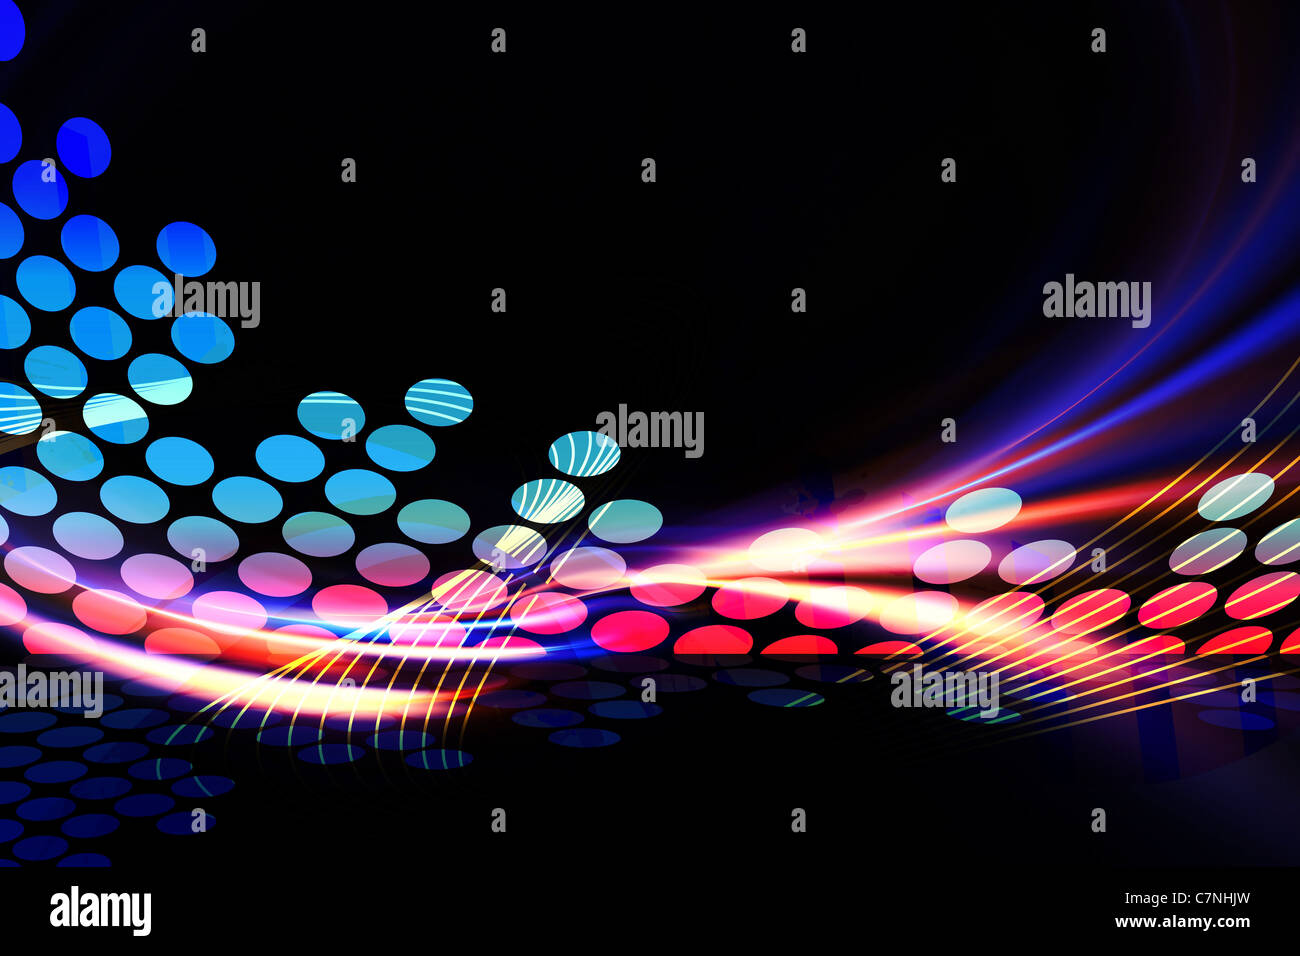 Un égaliseur graphique numérique illustration avec rainbow fractale accents. Banque D'Images